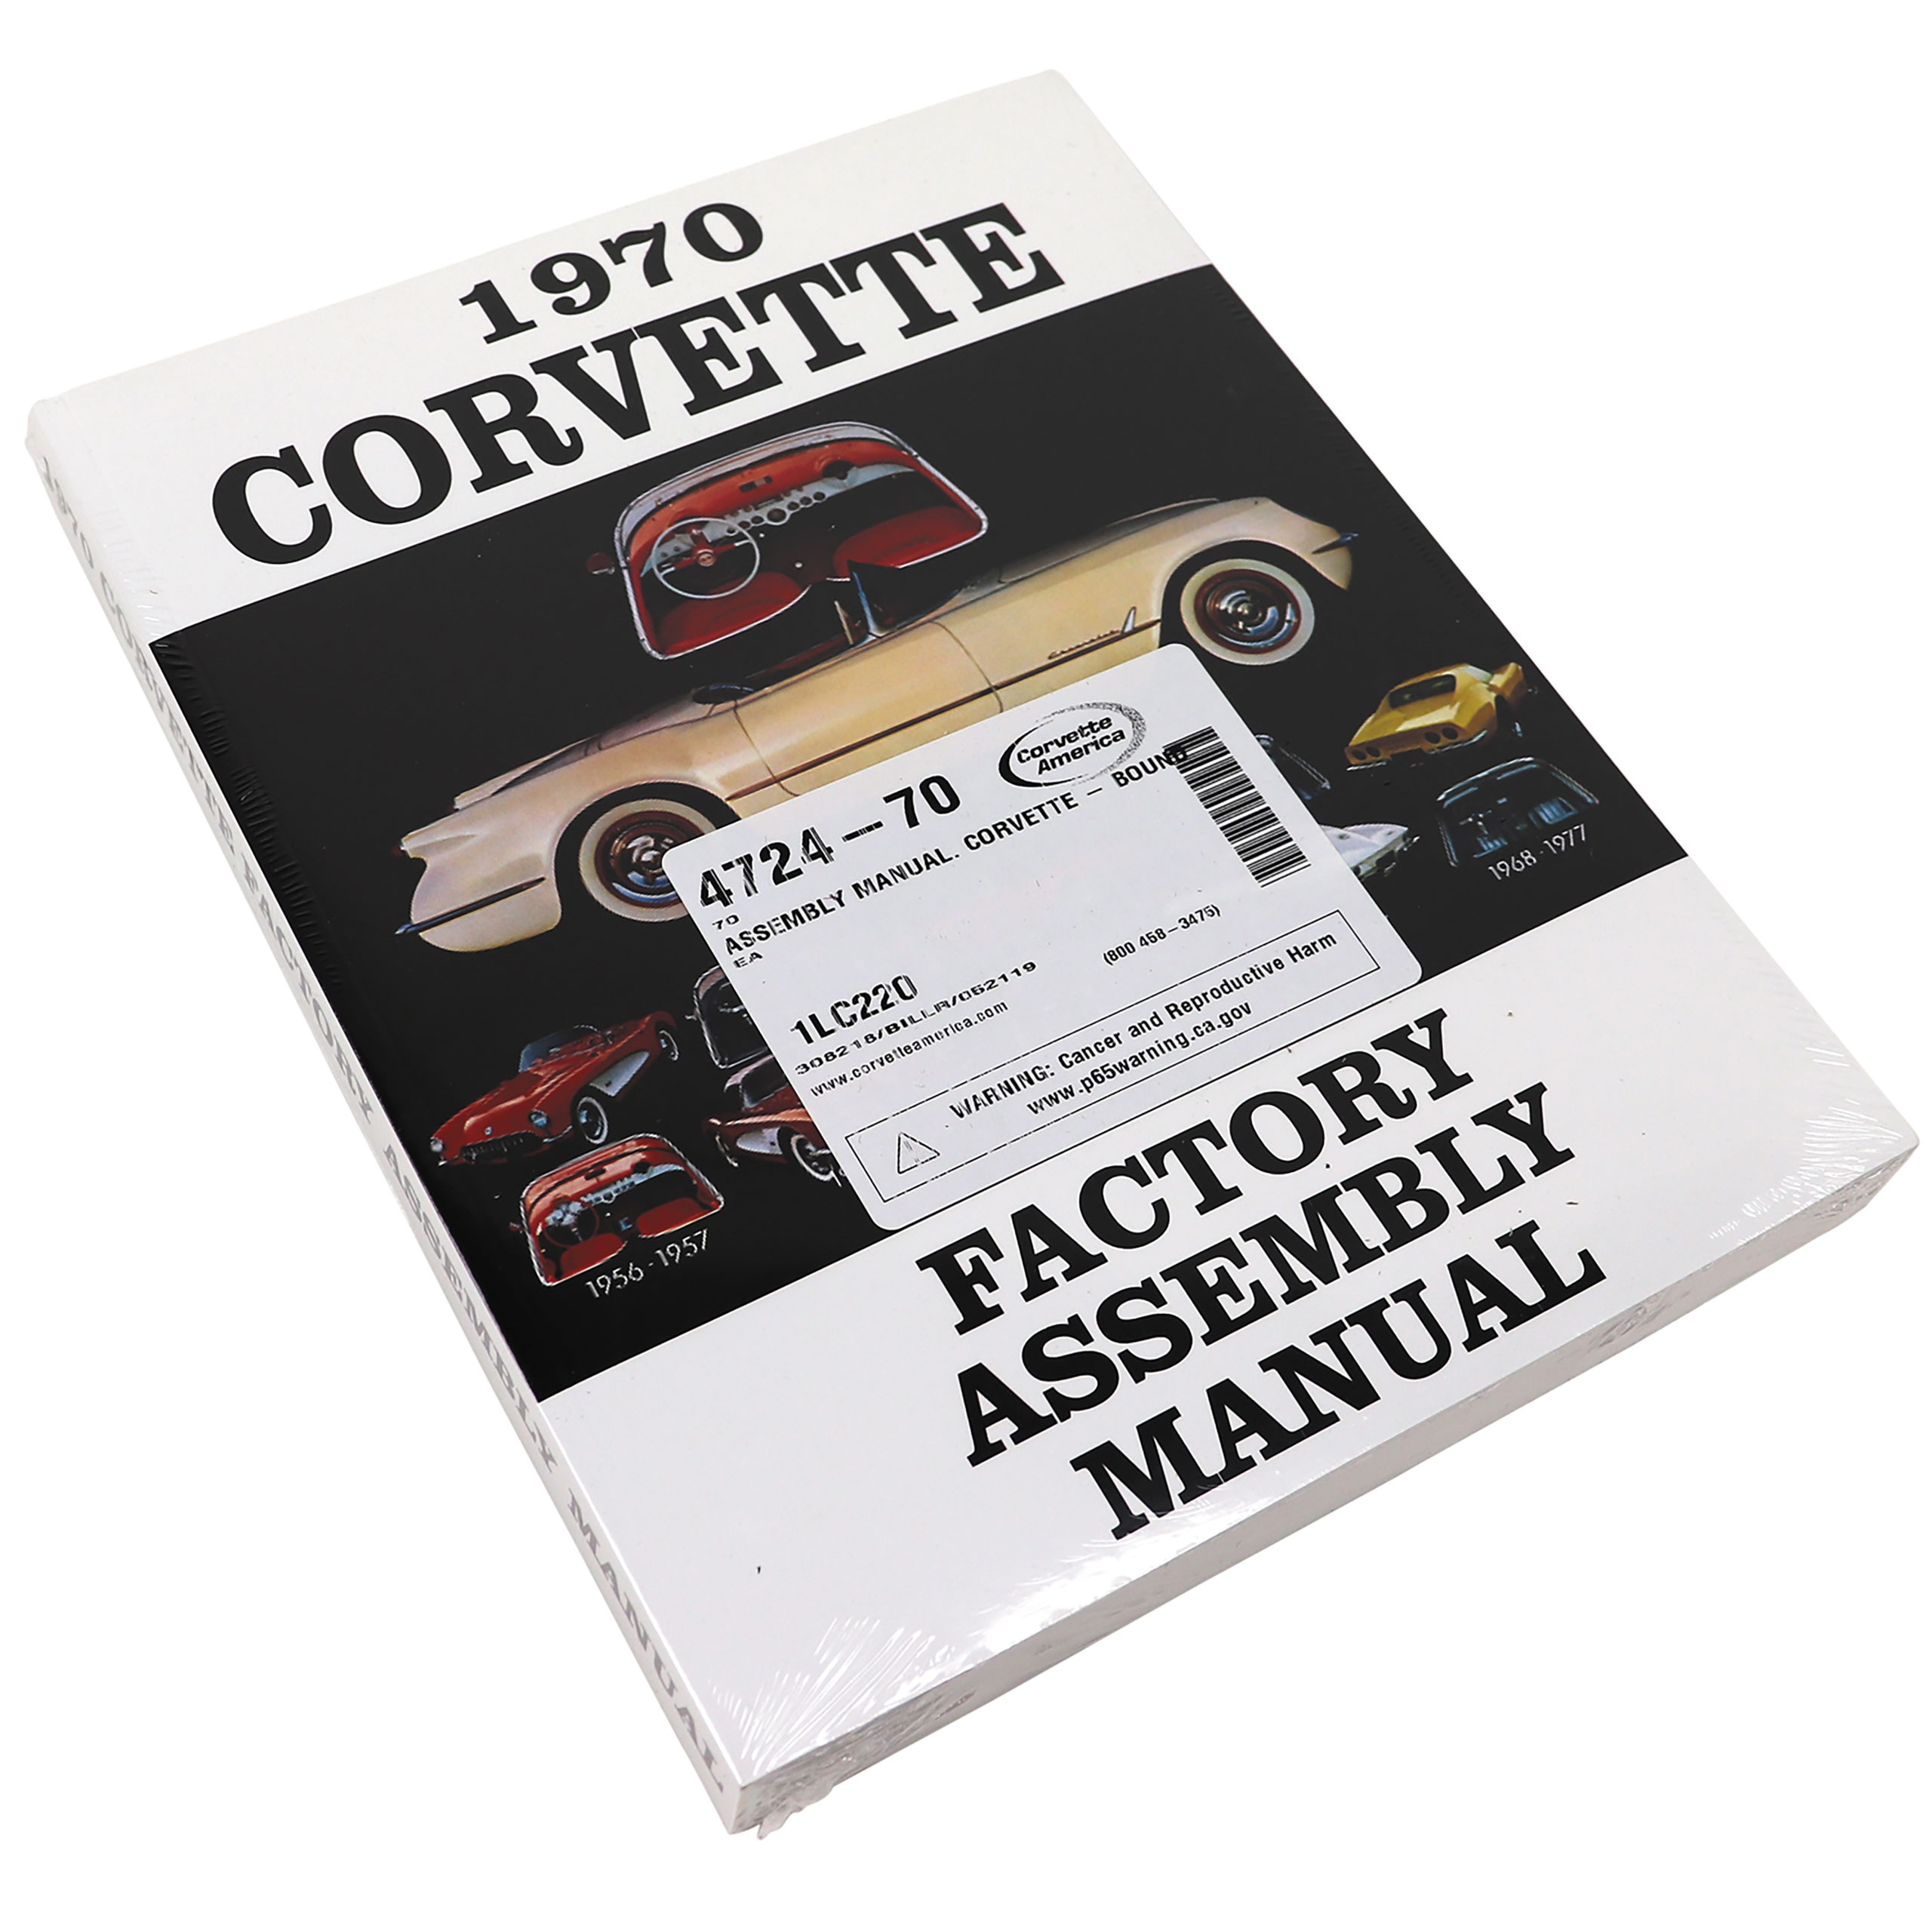 C3 1970 Chevrolet Corvette Assembly Manual. Corvette - Bound - Auto Accessories of America